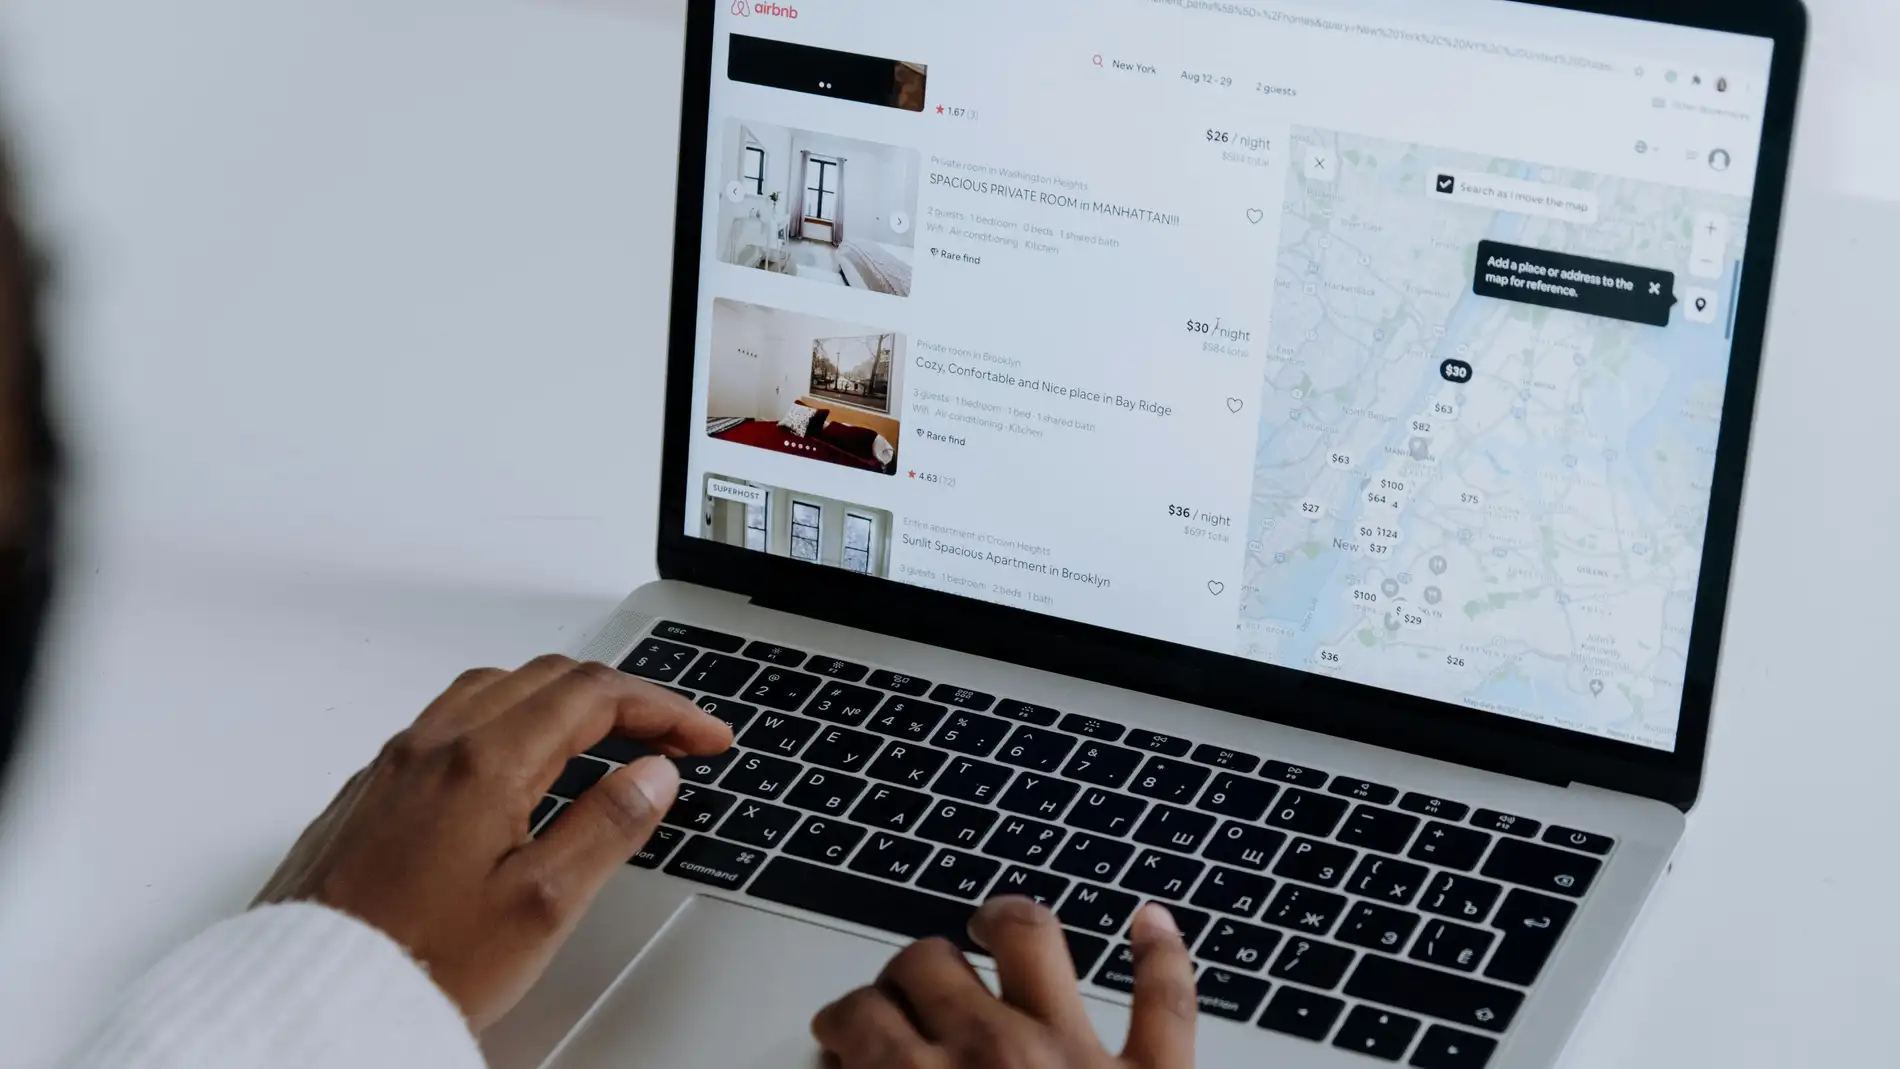 Airbnb prohíbe las cámaras de vigilancia en los interiores de los alojamientos